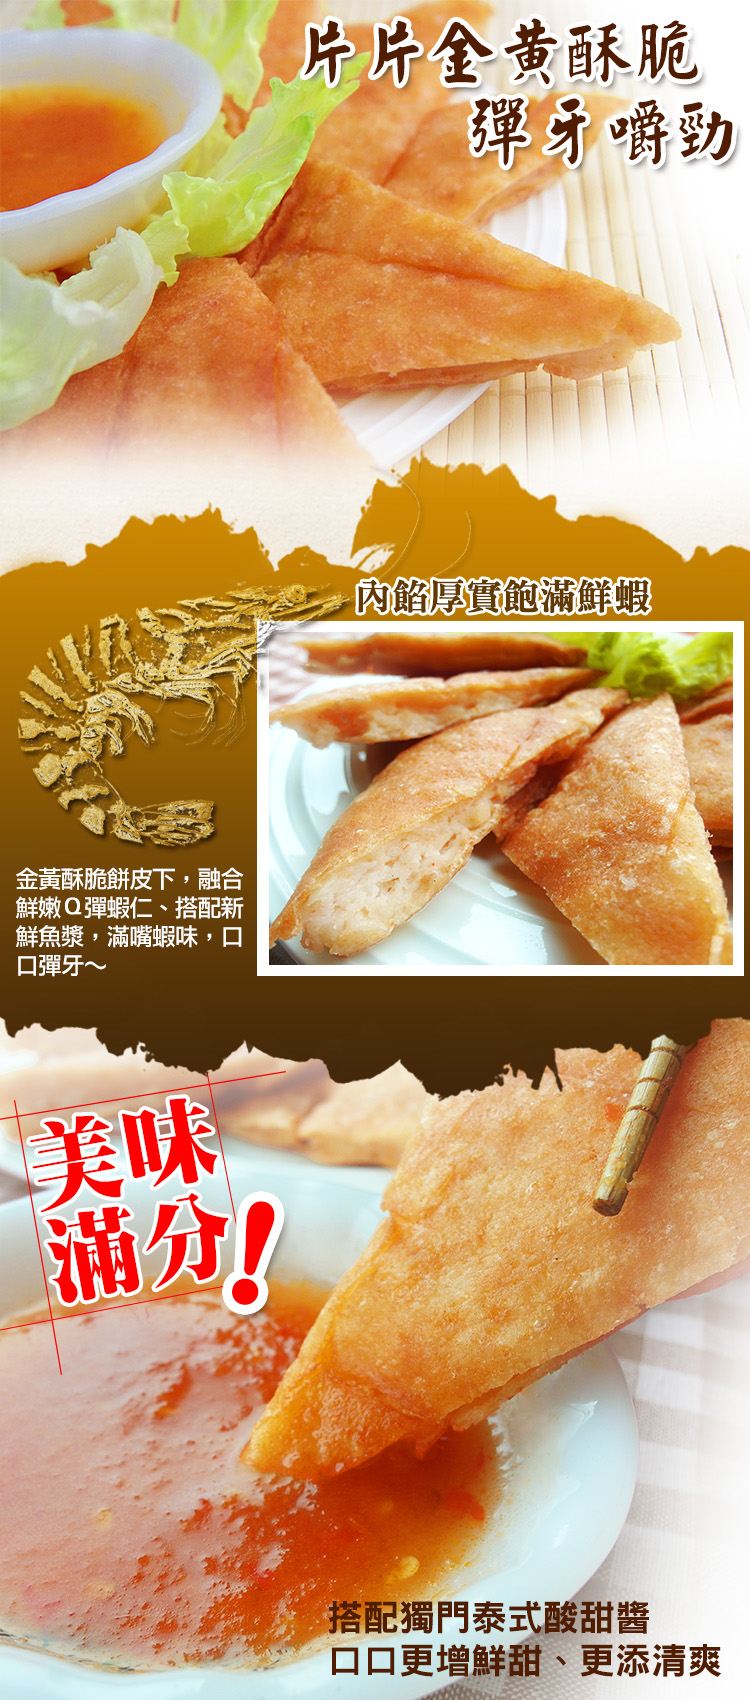 (團購組) 食吧嚴選 泰式黃金月亮蝦餅 20片組( 200g±10%/片 )-附泰式酸甜醬